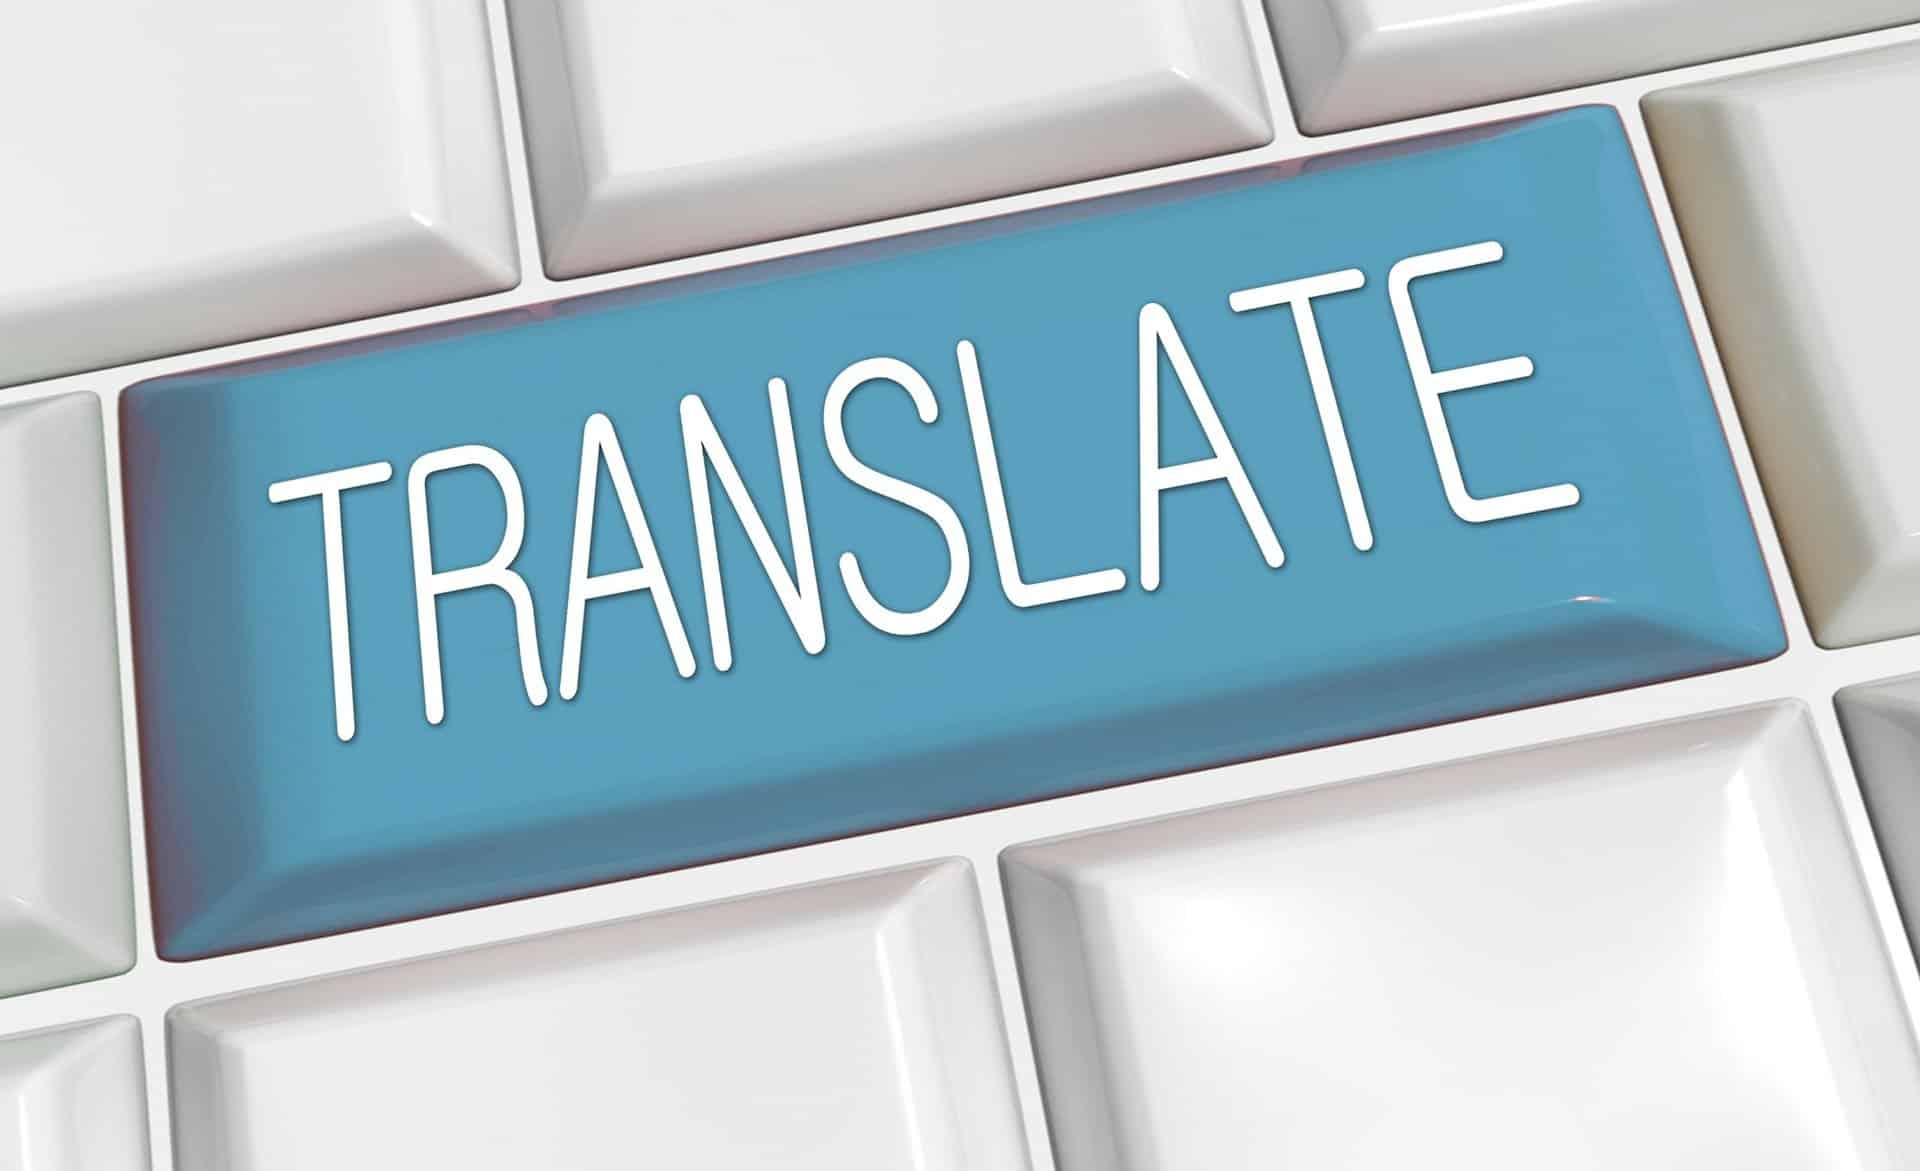 برنامج المترجم بكافة الإصدارات وأهم مميزاته للمستخدمين واللغات التي يدعمها